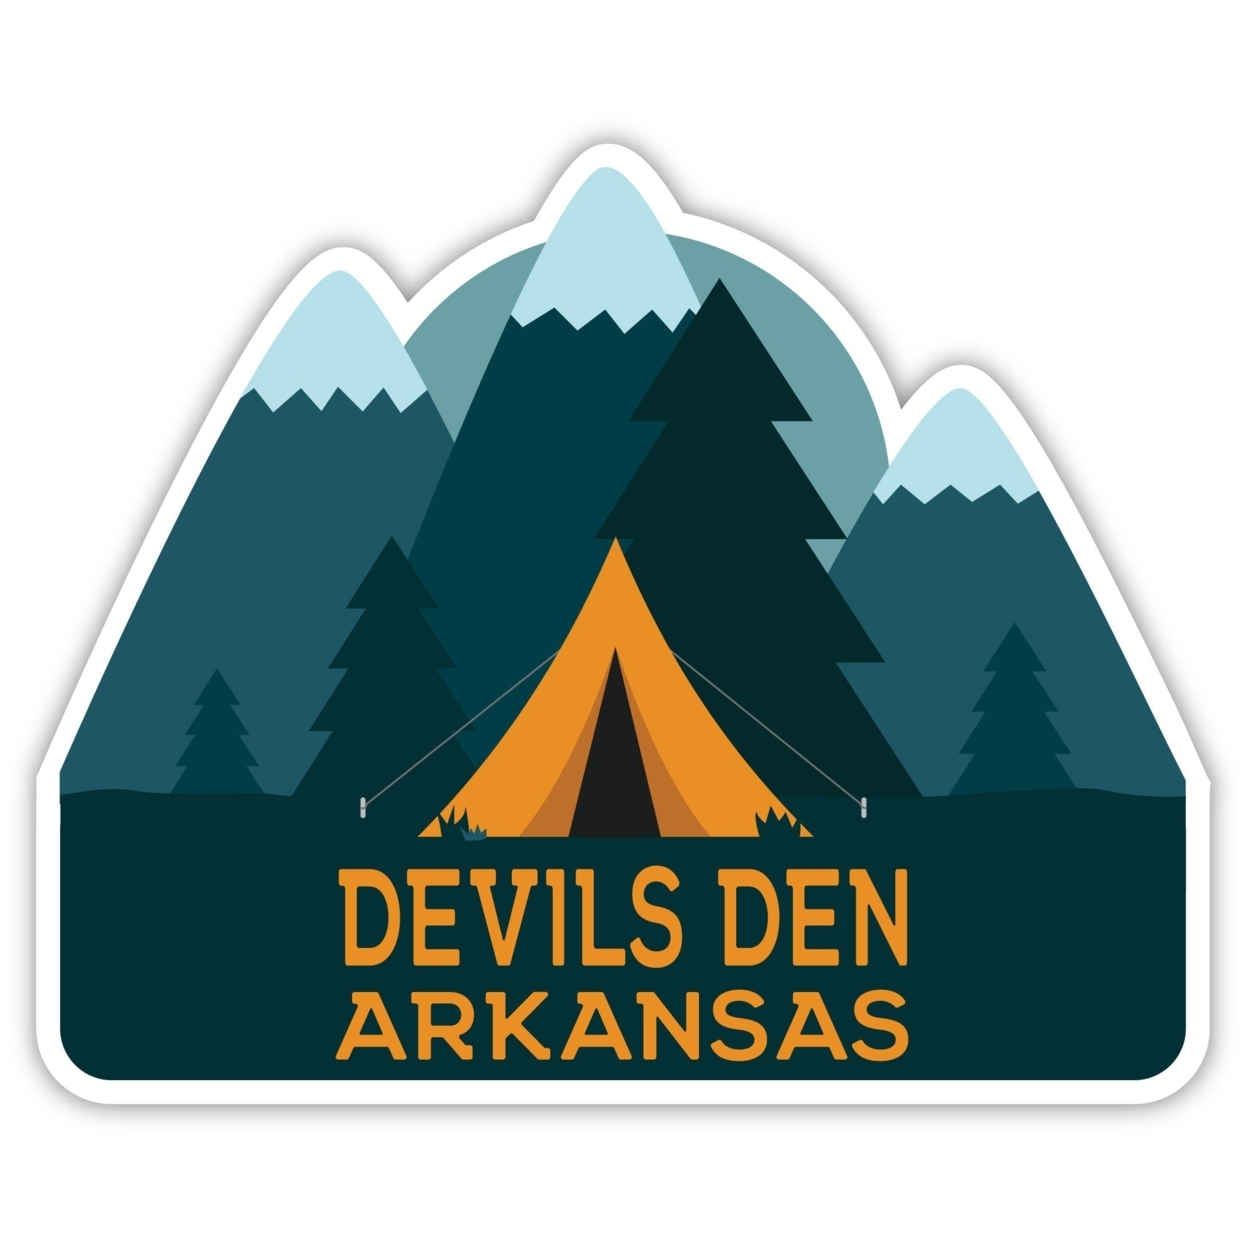 Devils Den Arkansas Souvenir Decorative Stickers (Choose Theme And Size) - Single Unit, 10-Inch, Tent